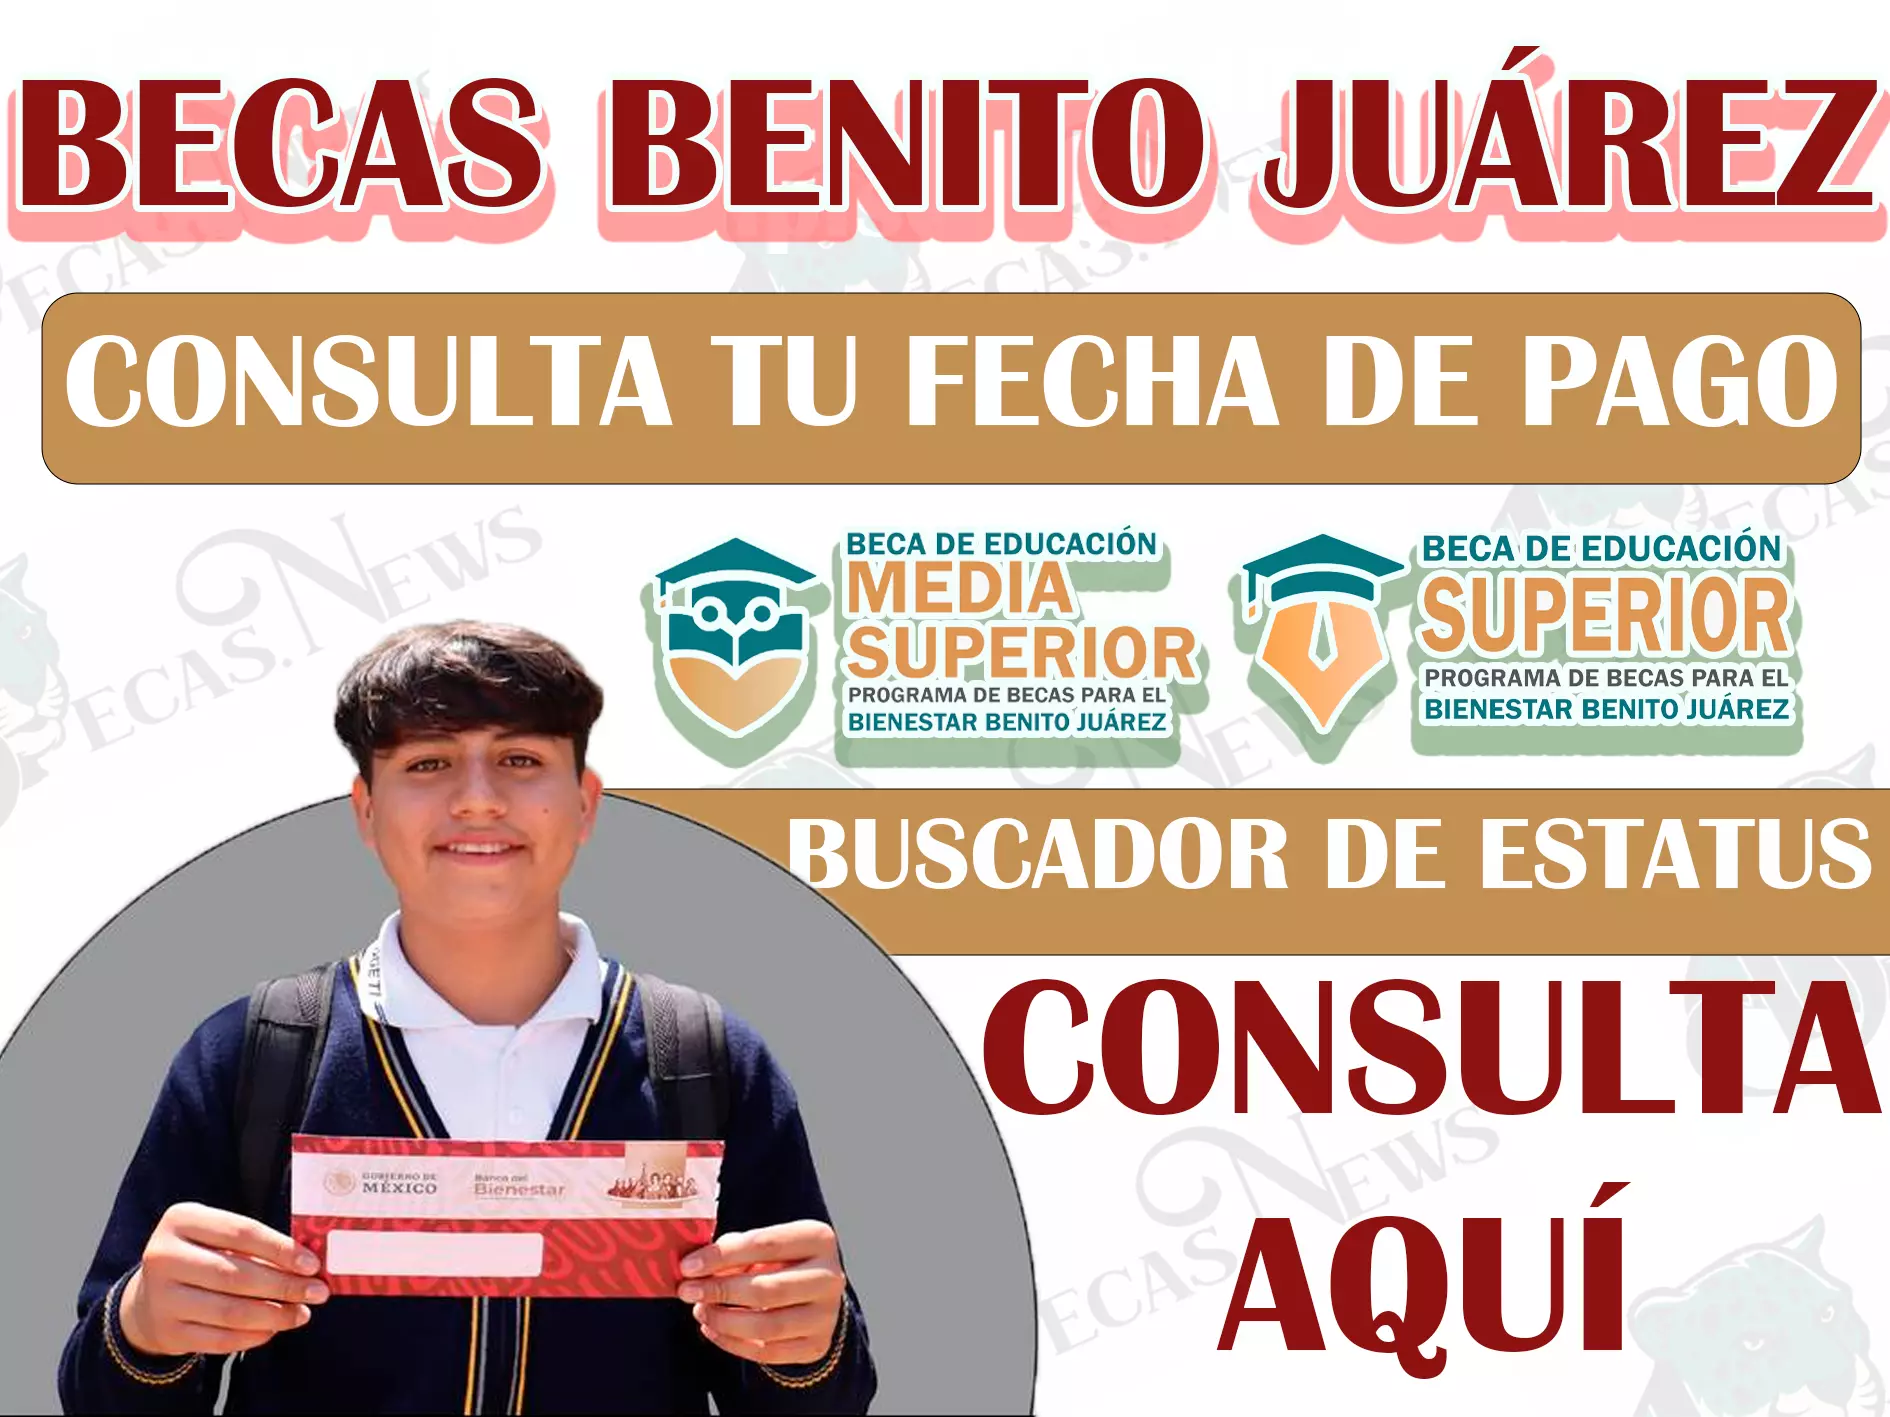 ¡Atención alumnos! Conoce los pasos correctos para consultar tu fecha exacta de pago |Becas Benito Juárez